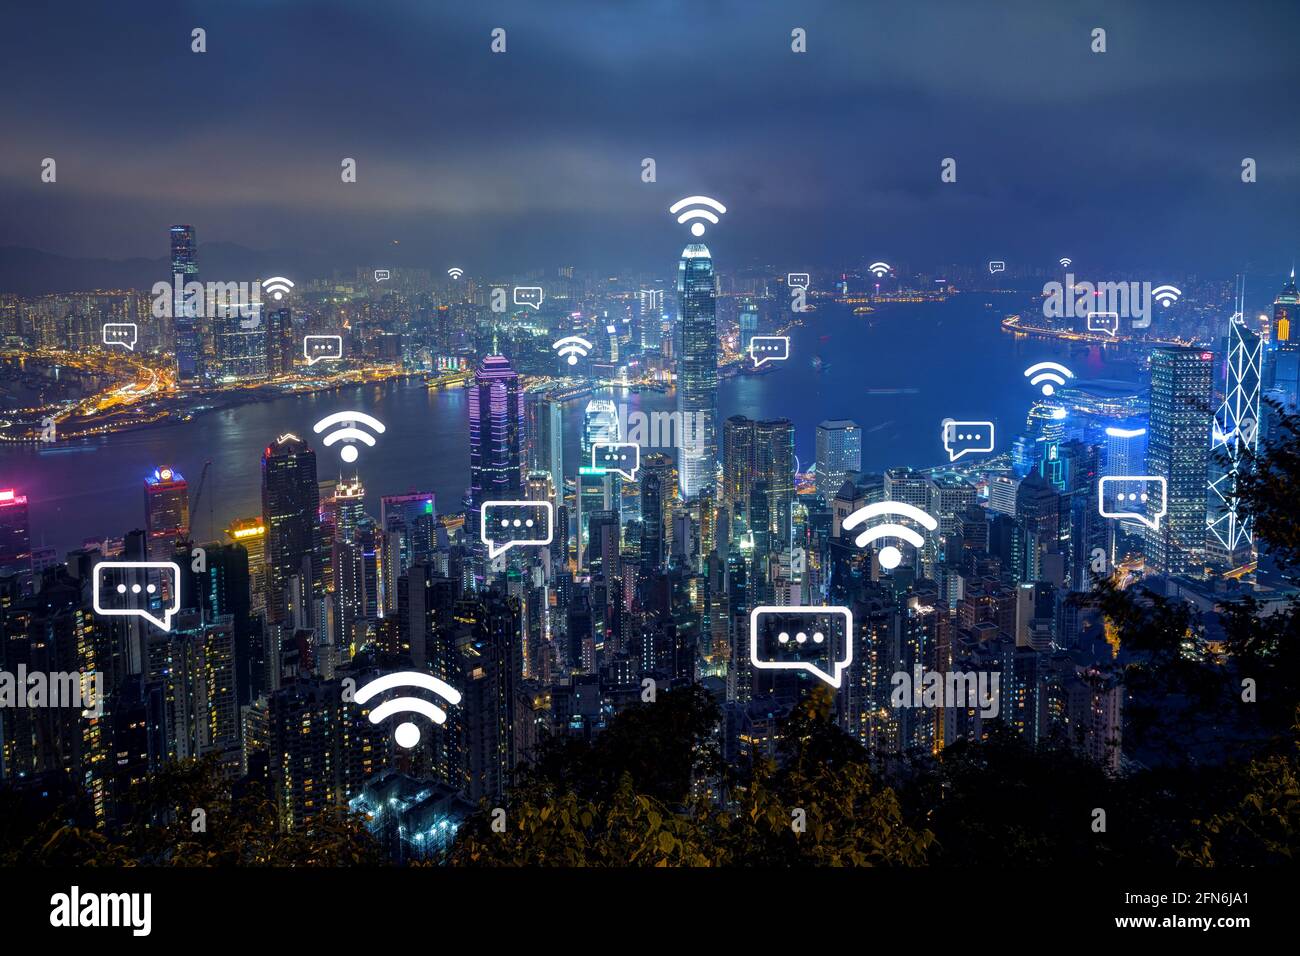 Wi-Fi e icone dei messaggi sulla vista panoramica dello skyline di Hong Kong dall'alto al tramonto. Connessione di rete wireless, WiFi, concetto di smart city e messaggistica online Foto Stock